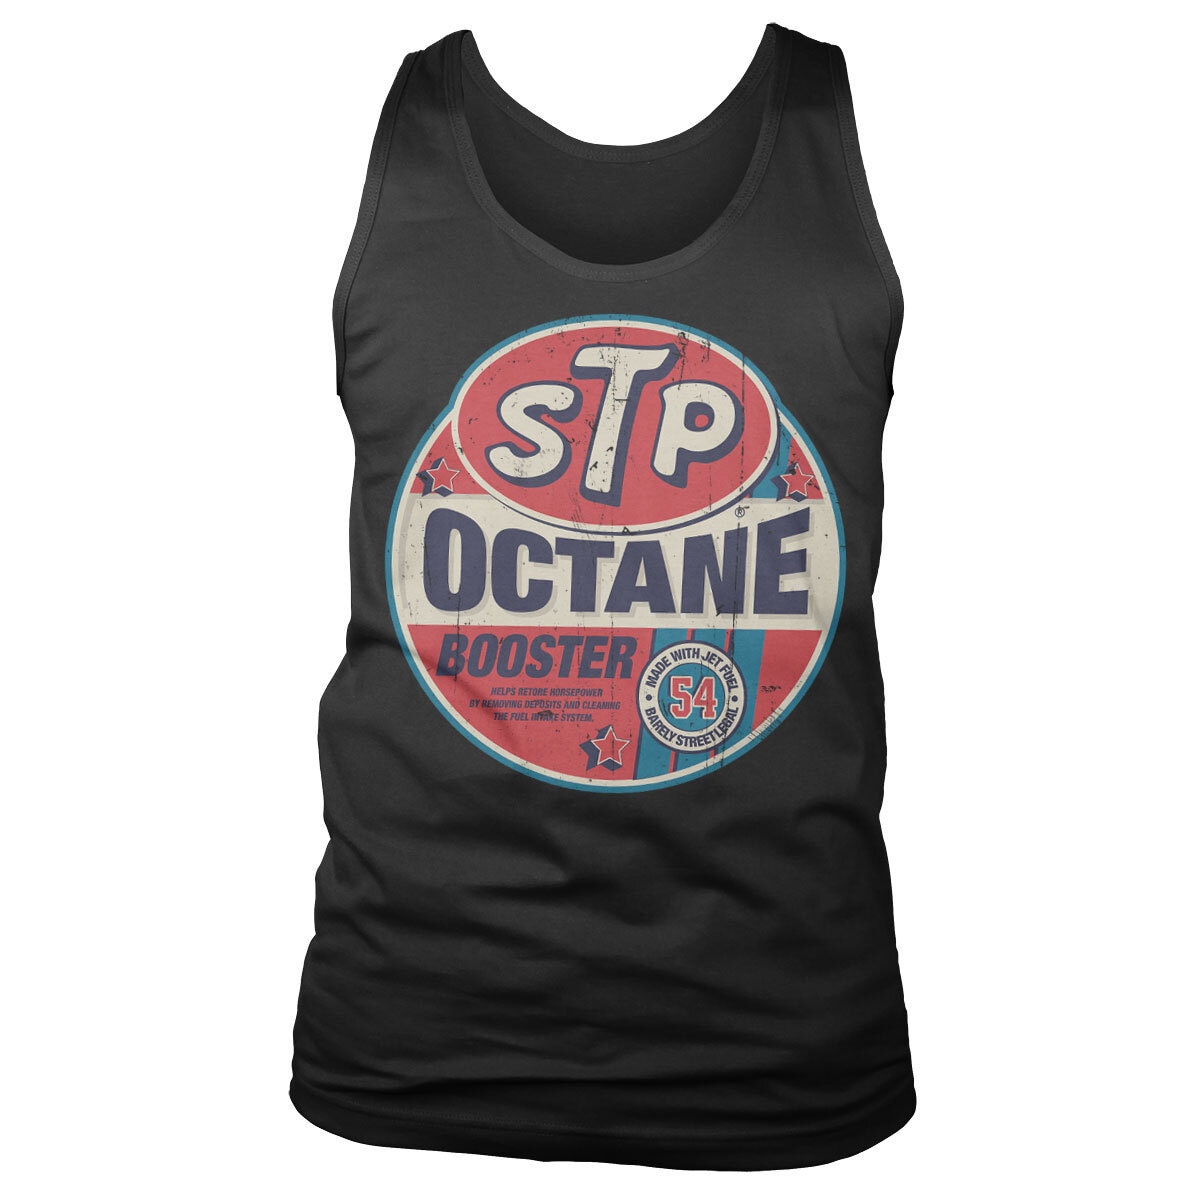 STP Octane Booster Tank Top